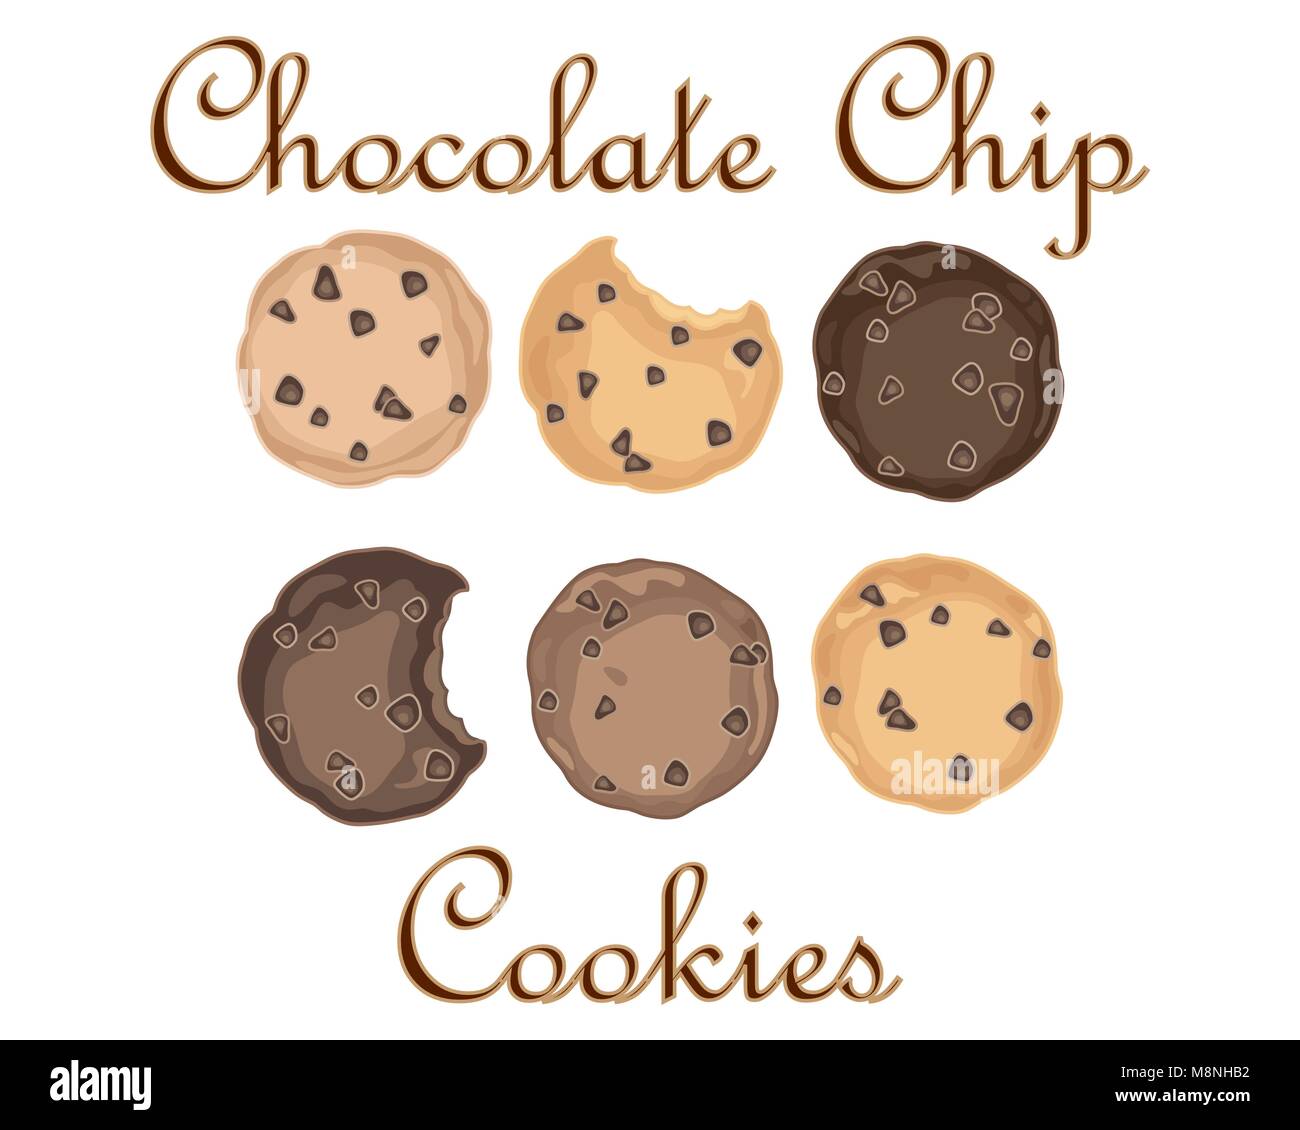 Un vecteur illustration au format eps de sweet chocolate chip cookies dans un format publicitaire sur un fond blanc Illustration de Vecteur